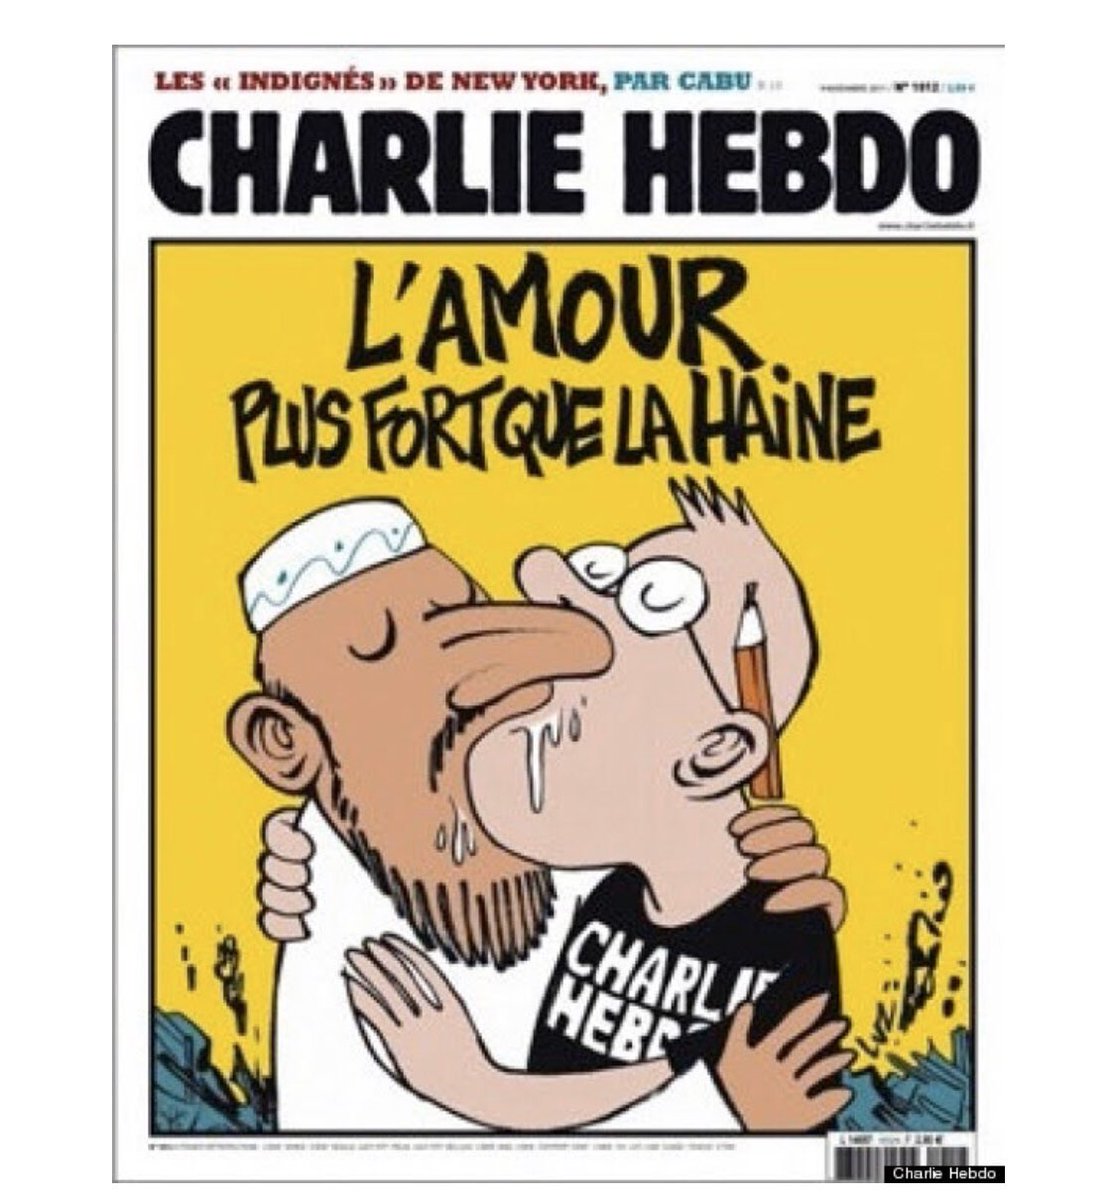 Os dejo con los dibujos que causaron todo el revuelo. #JeSuisCharlie ¡VIVA LA LIBERTAD DE EXPRESIÓN!